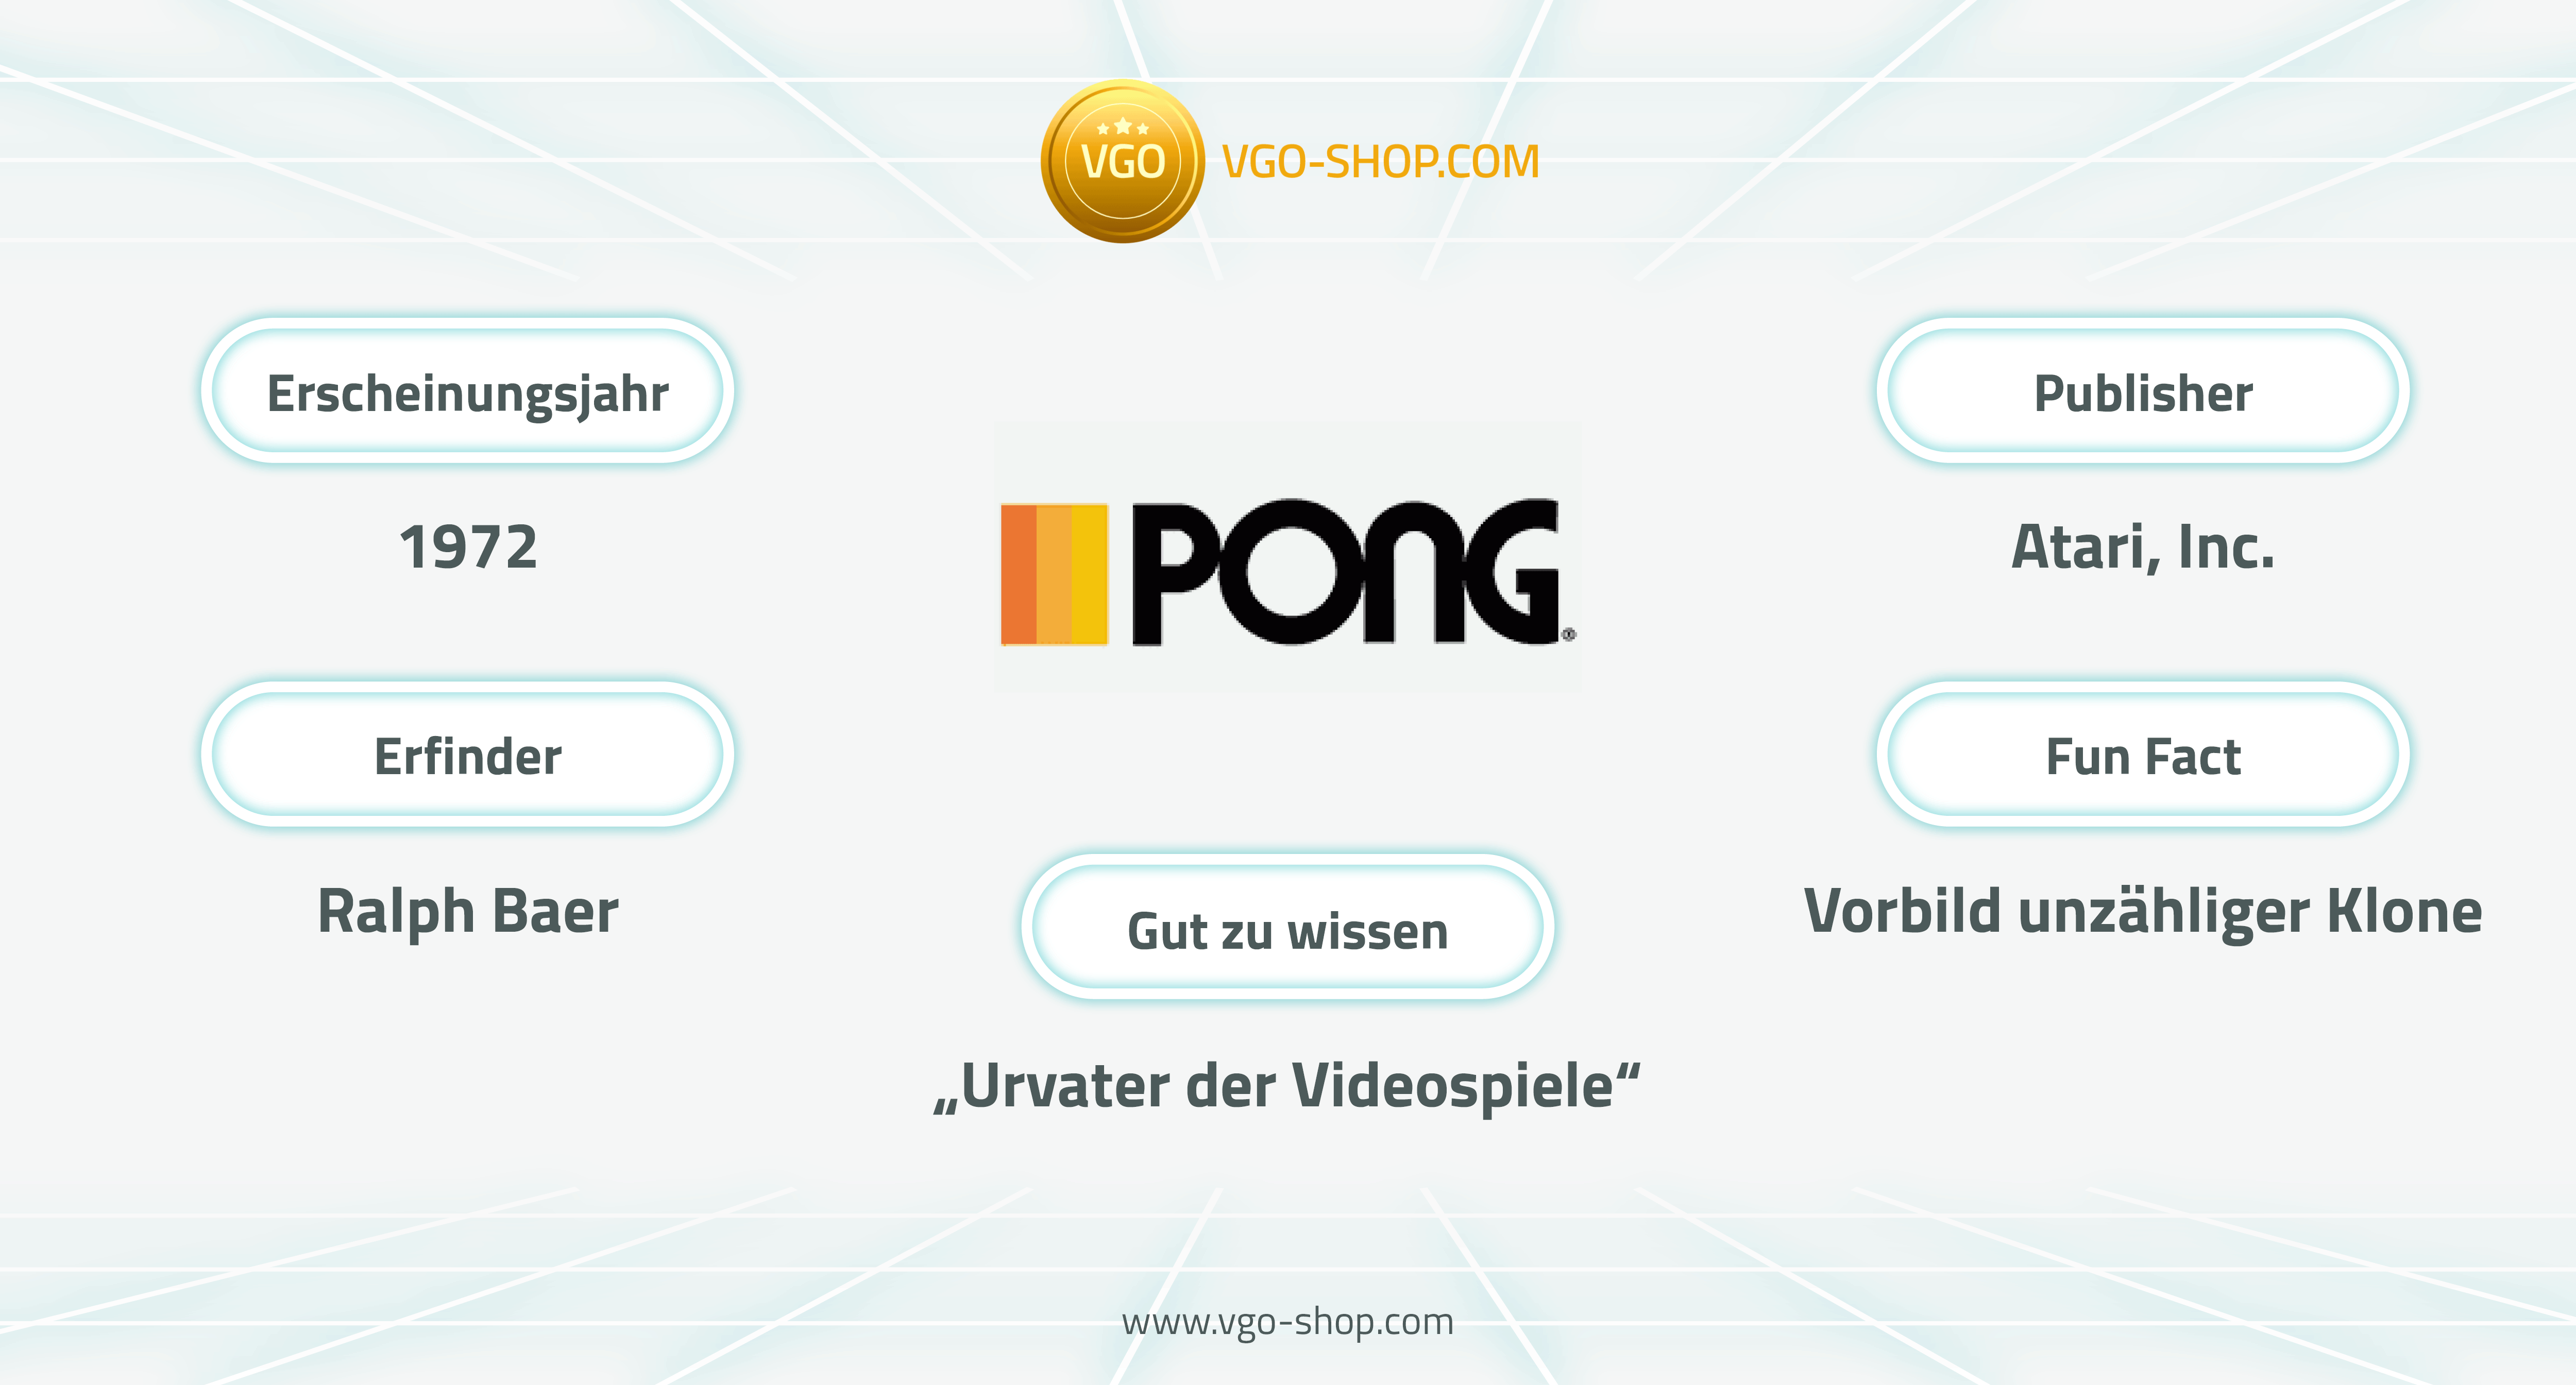 Pong gehört zu den ersten Videospielen weltweit